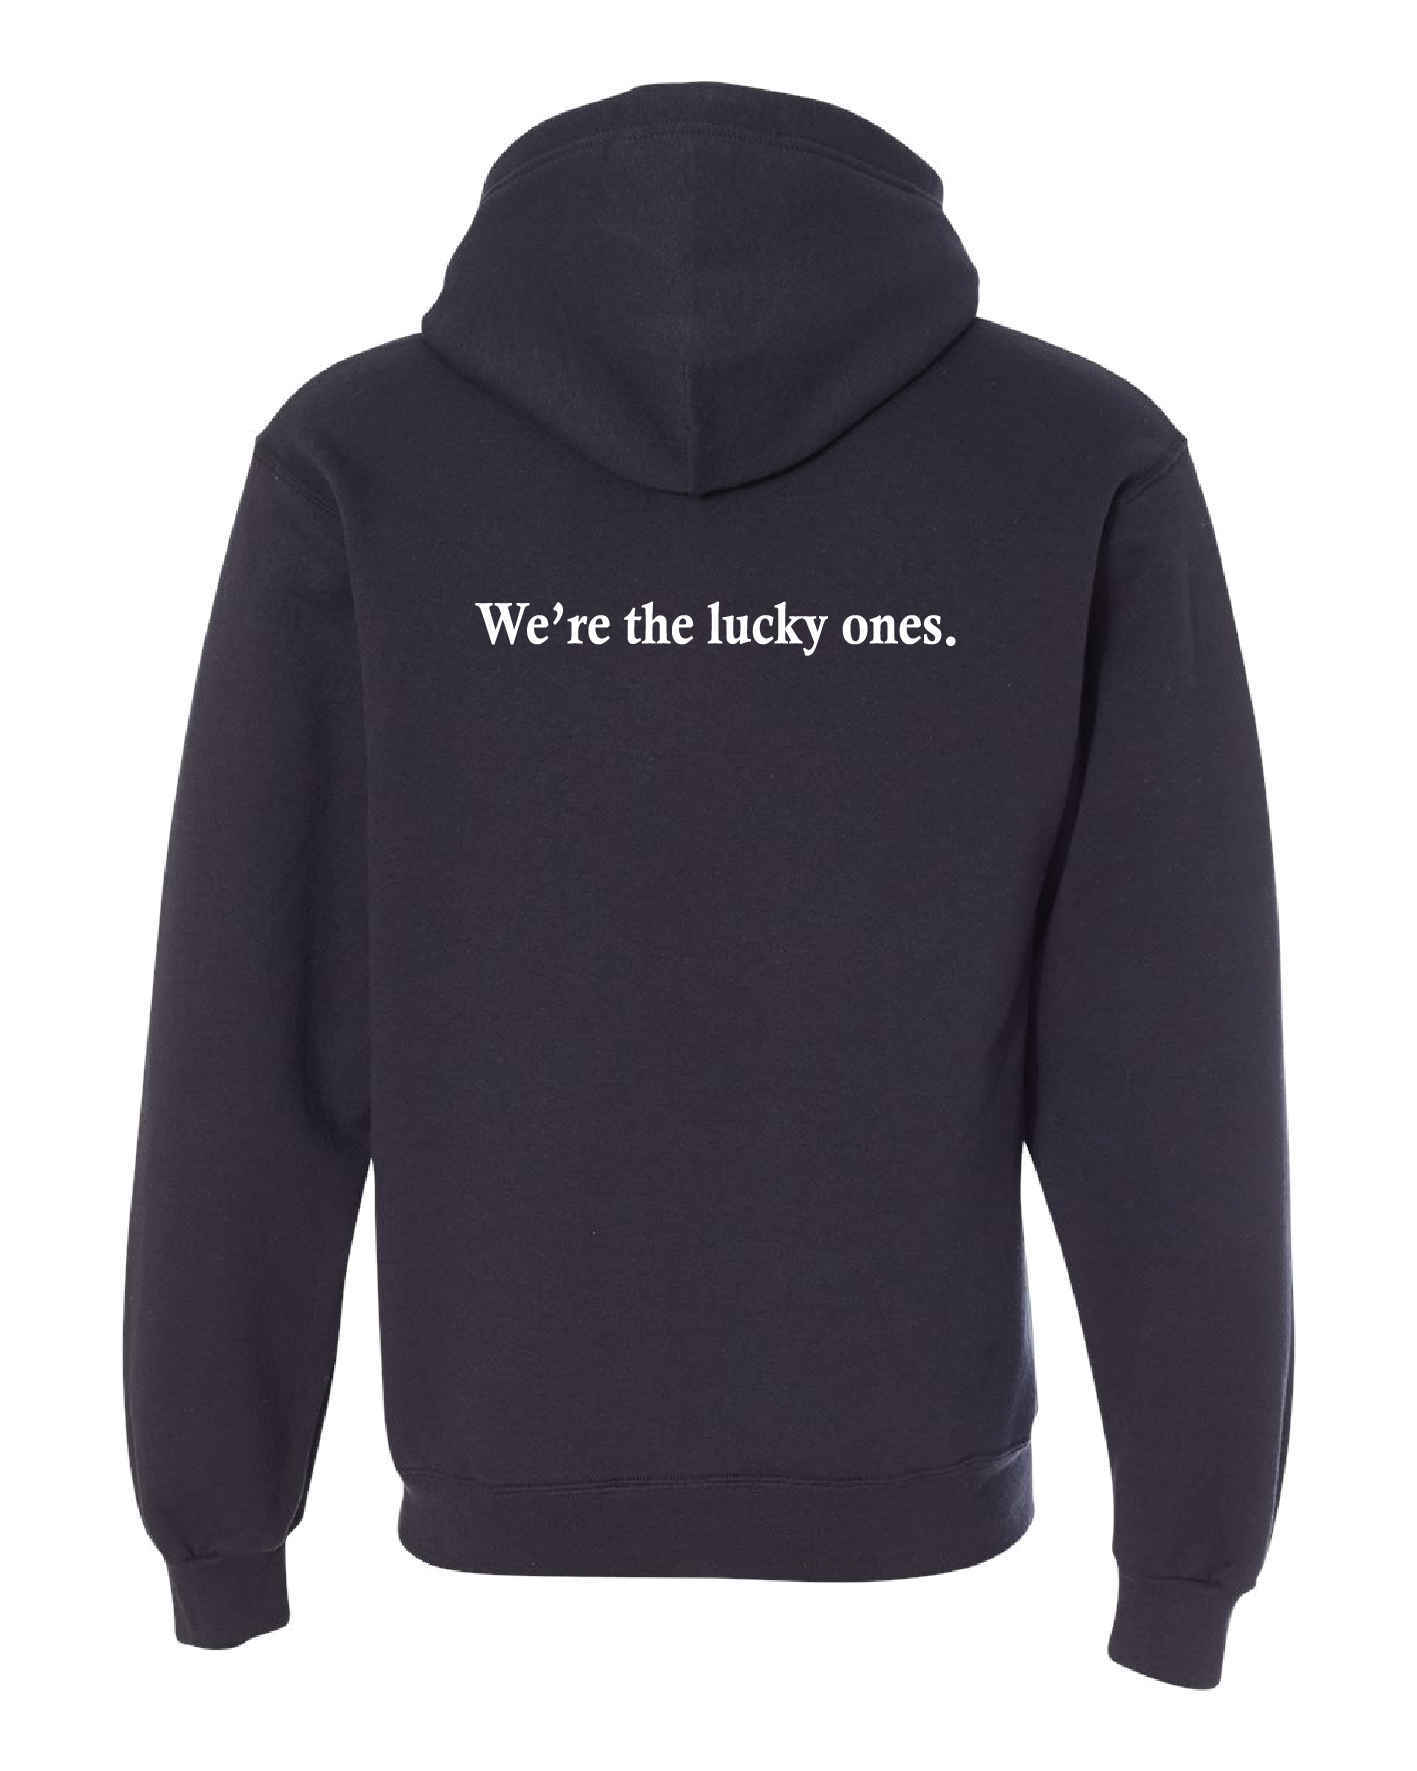 Bloodkin Sweatshirt - We're The Lucky Ones